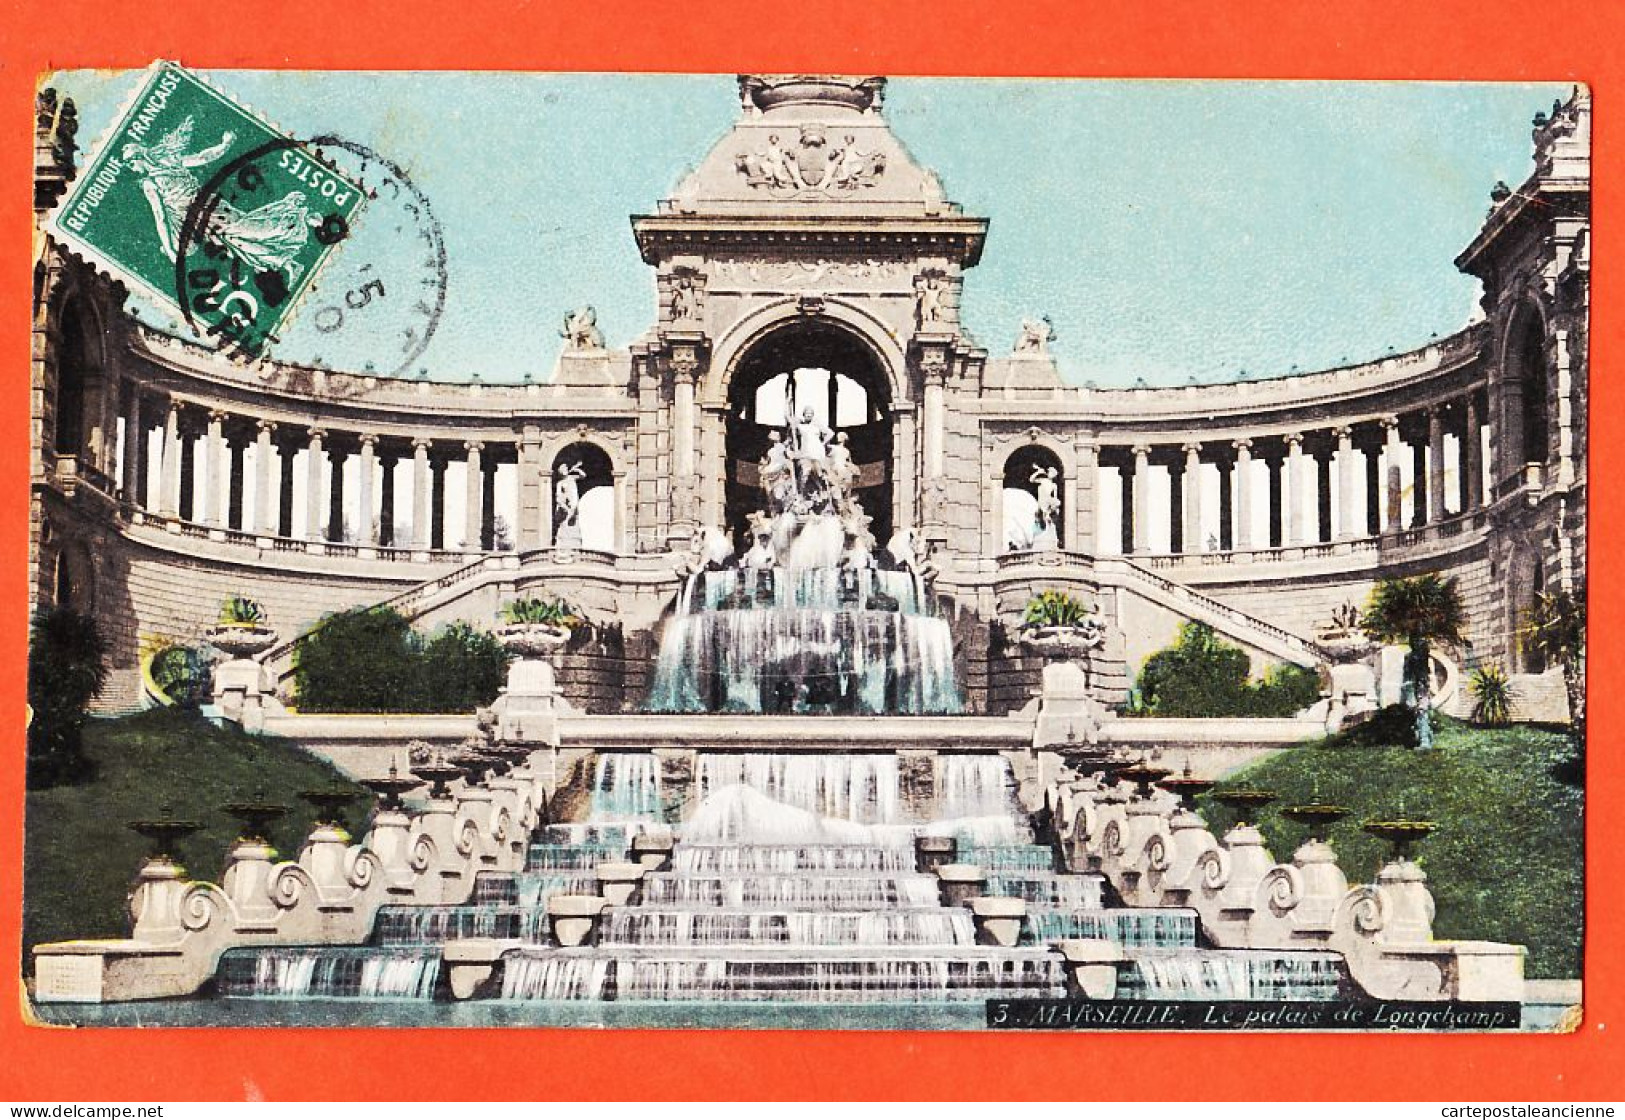 35018 / Aqua-Photo LEOPOLD VERGER 3 MARSEILLE (13) Palais LONGCHAMP 1909 à Honoré VILAREM Caporal 143e Inf - The Canebière, City Centre